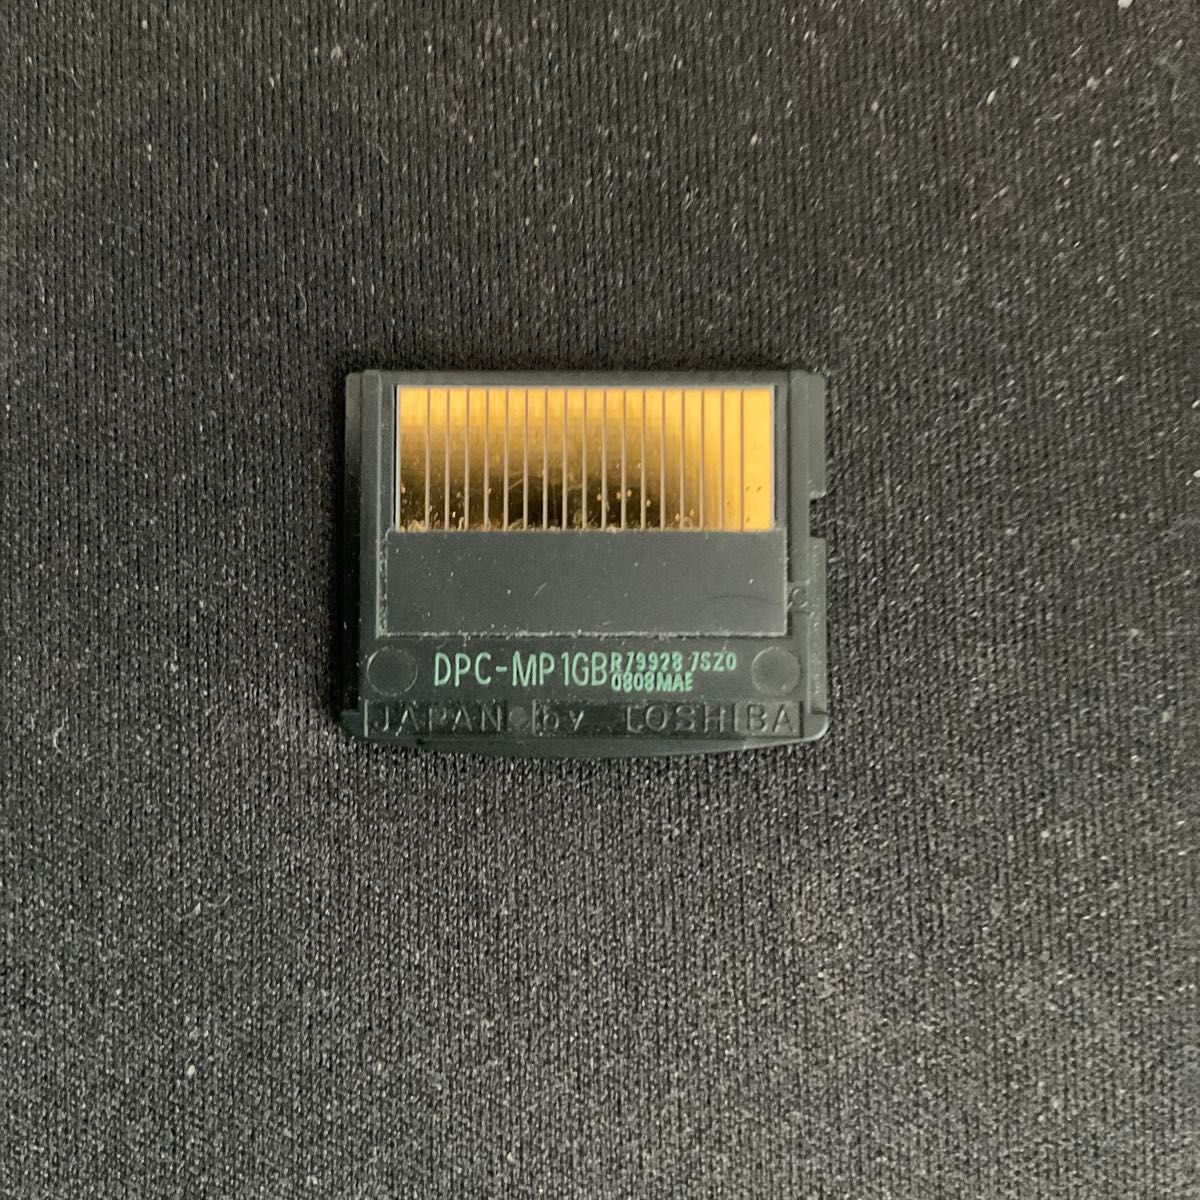 【貴重・古いデジカメに】FUJIFILM XDピクチャーカード TypeM+ 1GB